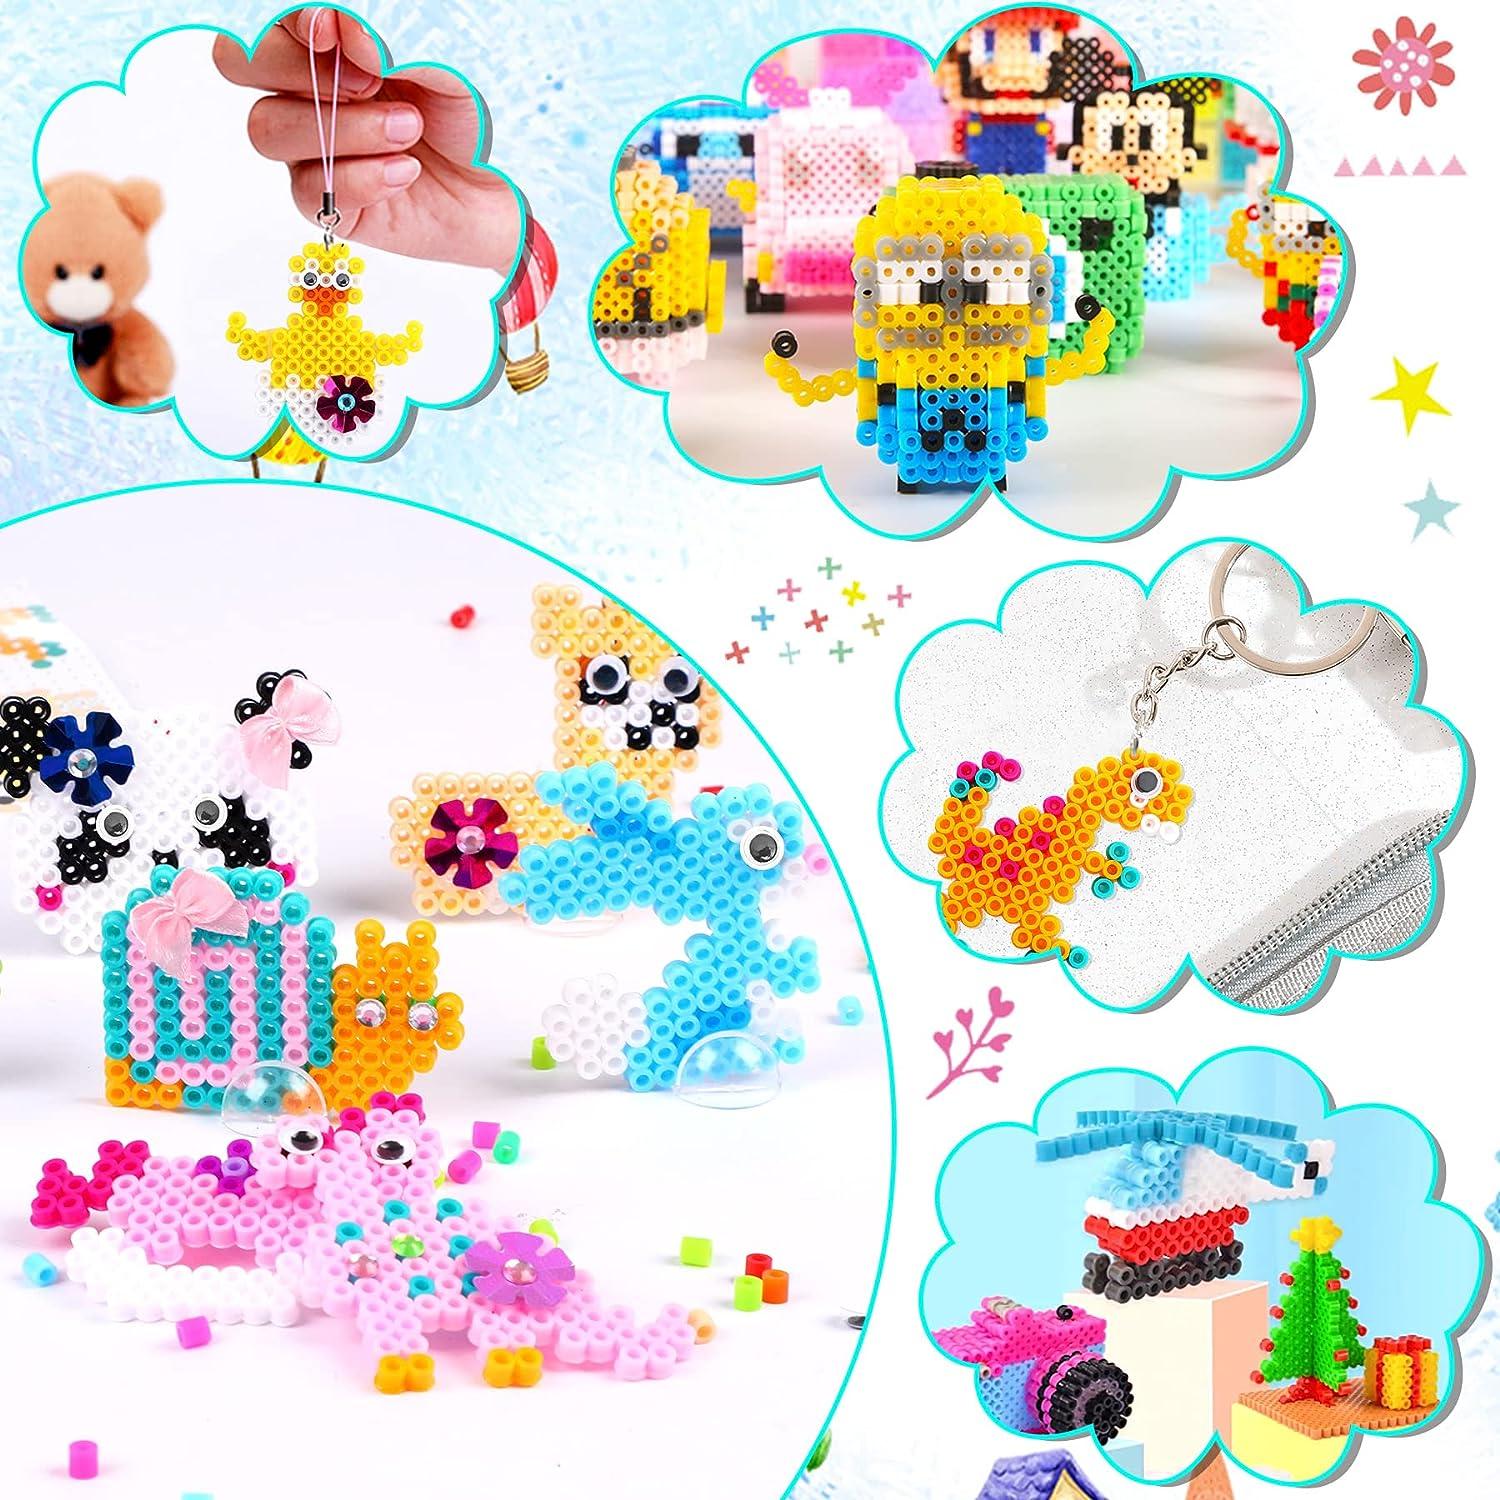  AUGSUN Fuse Beads Kit for Kids, 4600Pcs+ 24 Colors